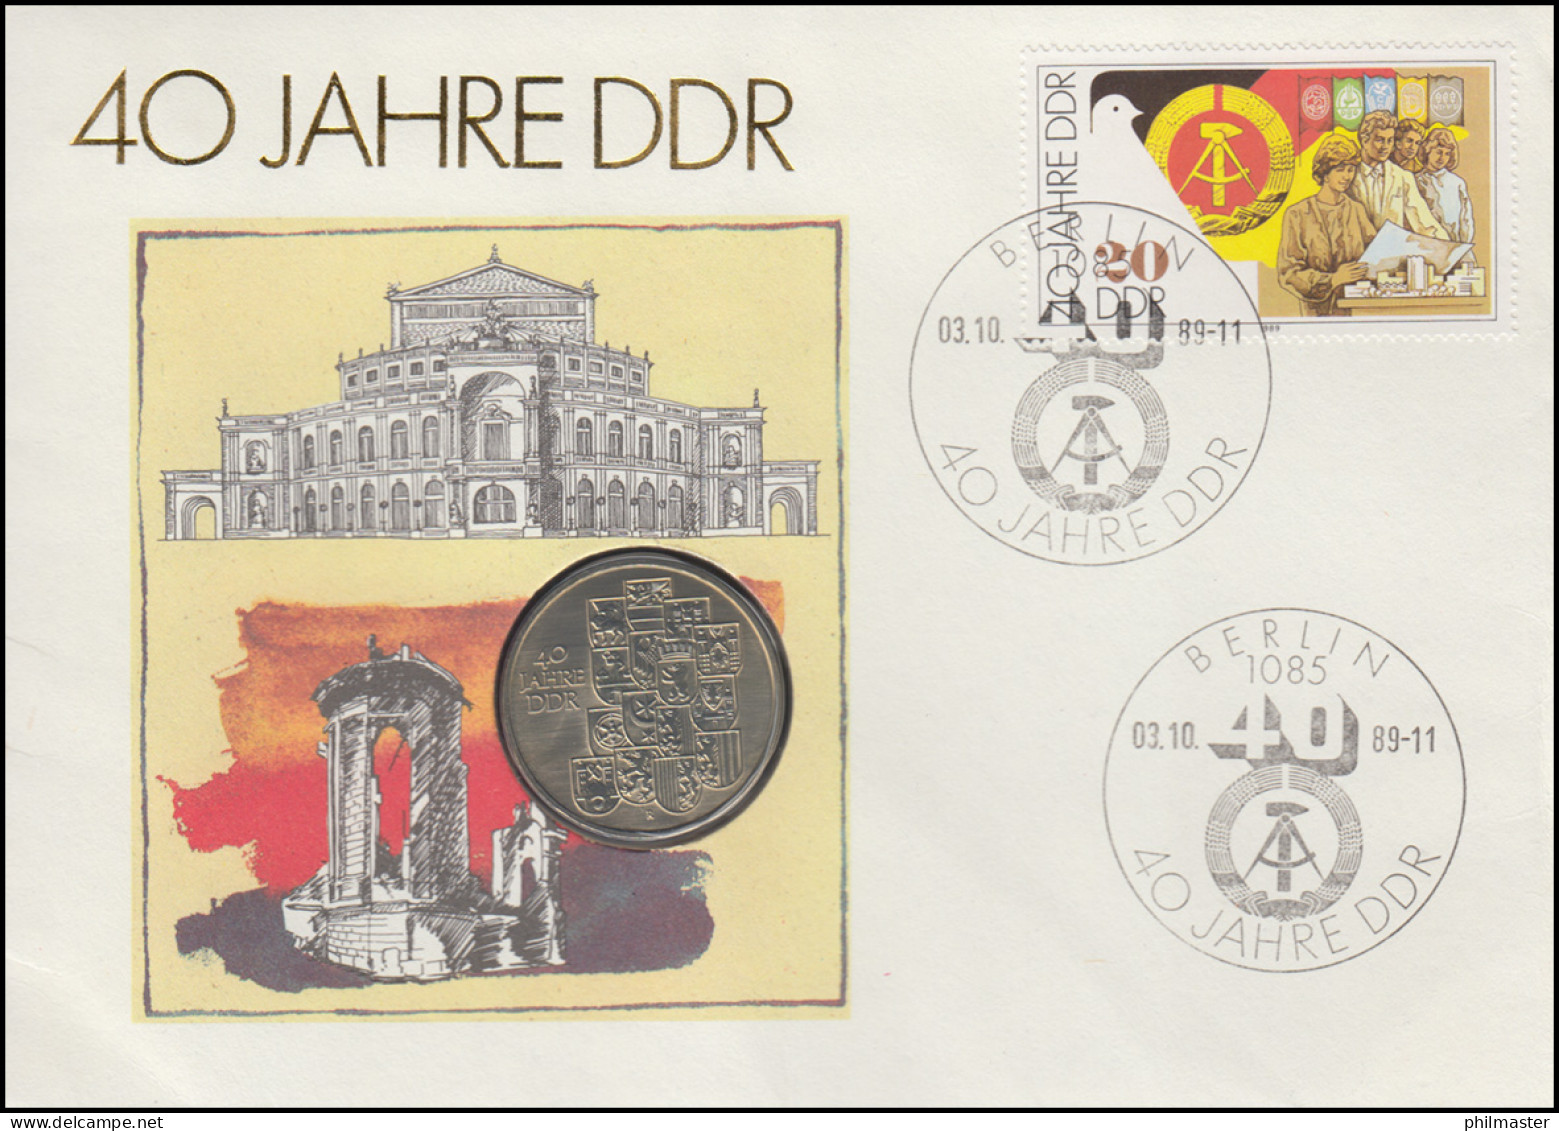 DDR-Numisbrief 40 Jahre DDR, 10-Mark-Gedenkmünze, ESSt 3.10.1989 - Enveloppes Numismatiques